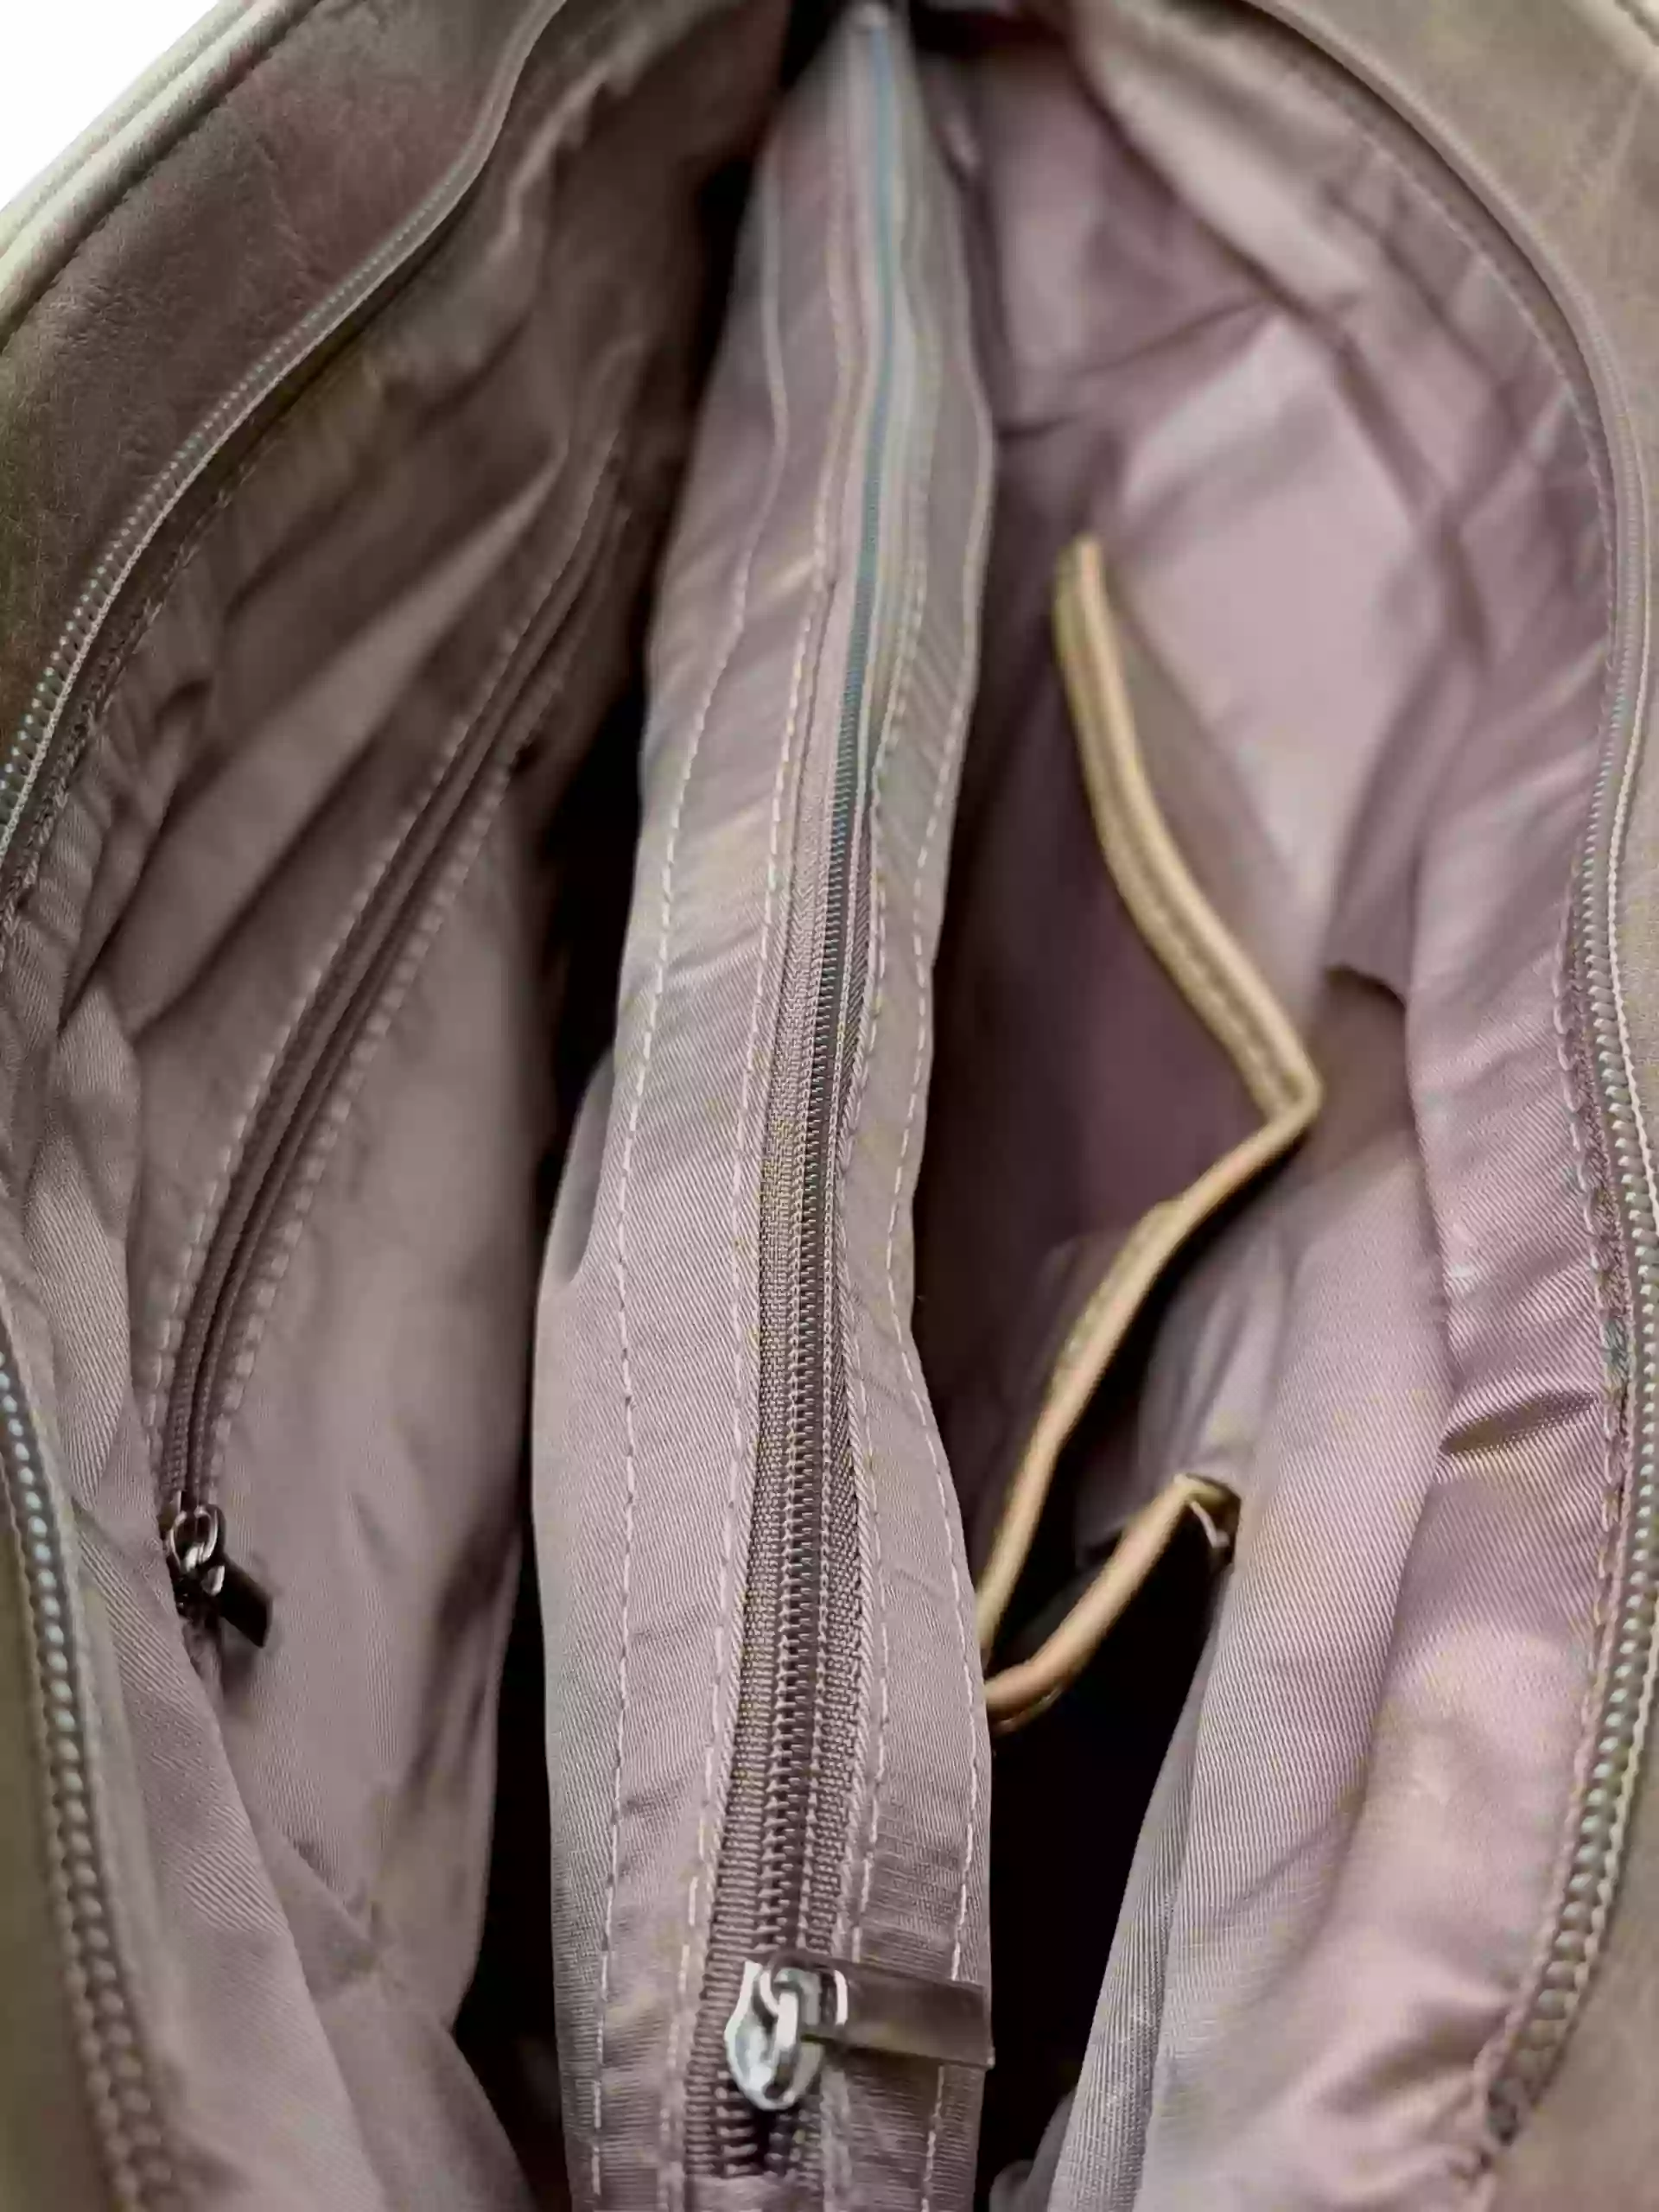 Velká béžová kabelka přes rameno se vzorem, Tapple, H22409-1, vnitřní uspořádání kabelky přes rameno